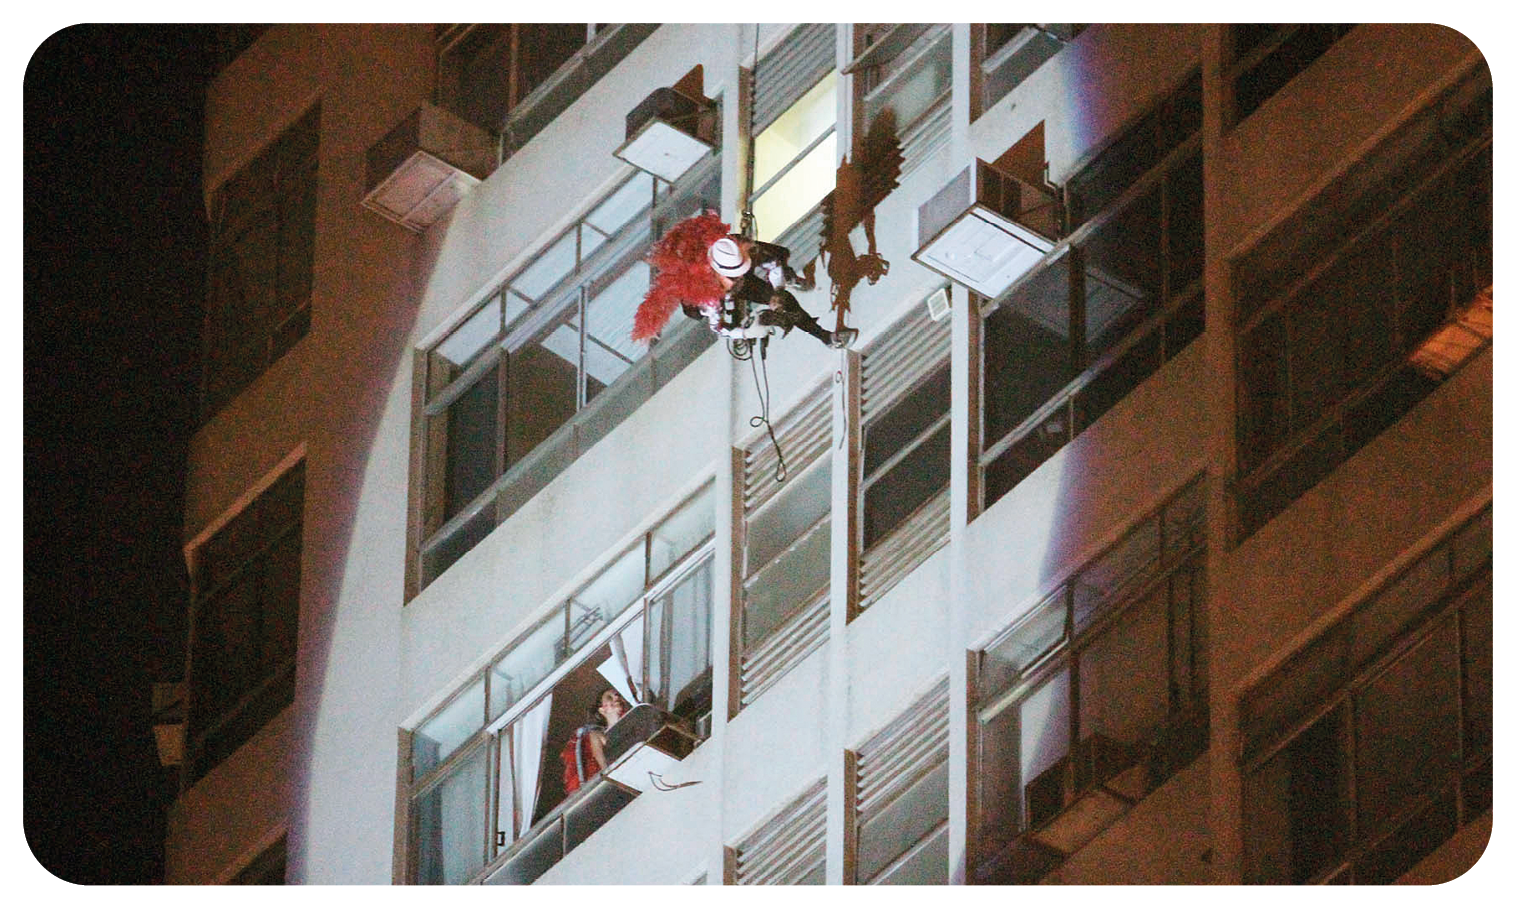 Fotografia. Vista de baixo para cima de um homem usando chapéu branco, roupa preta e capa vermelha; ele está descendo um prédio usando uma corda. À esquerda, há uma janela aberta onde uma mulher olha para o homem descendo. A cena é noturna; o homem e a mulher estão iluminados por uma luz que vem de baixo para cima.